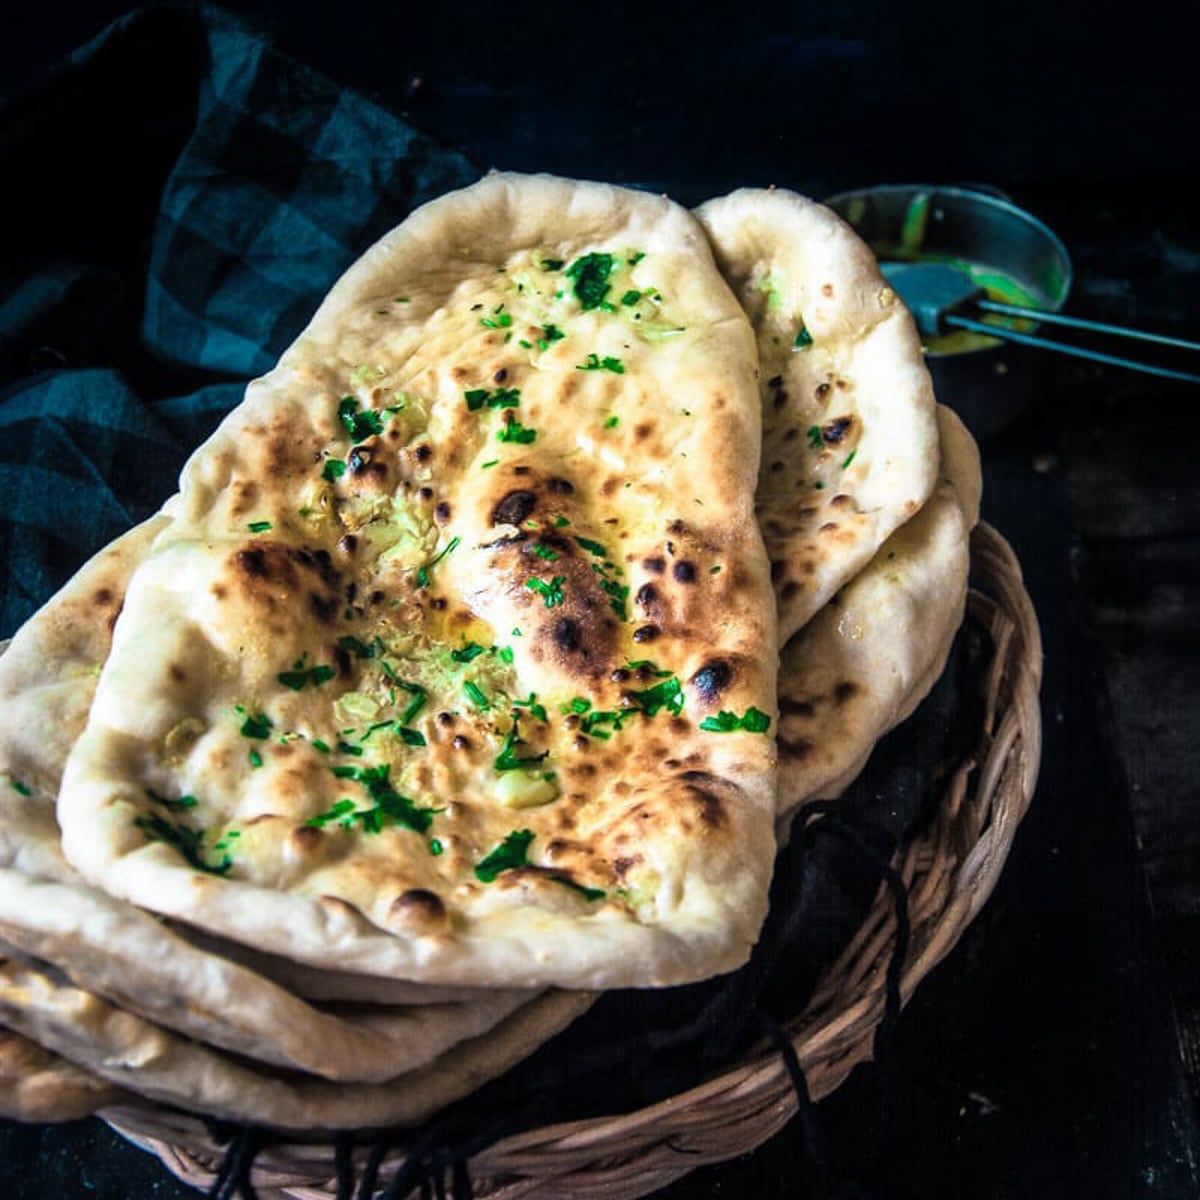 Restaurant Style Garlic Naan Recipe - Homemade Garlic Naan 3 Ways | My Ginger Garlic Kitchen